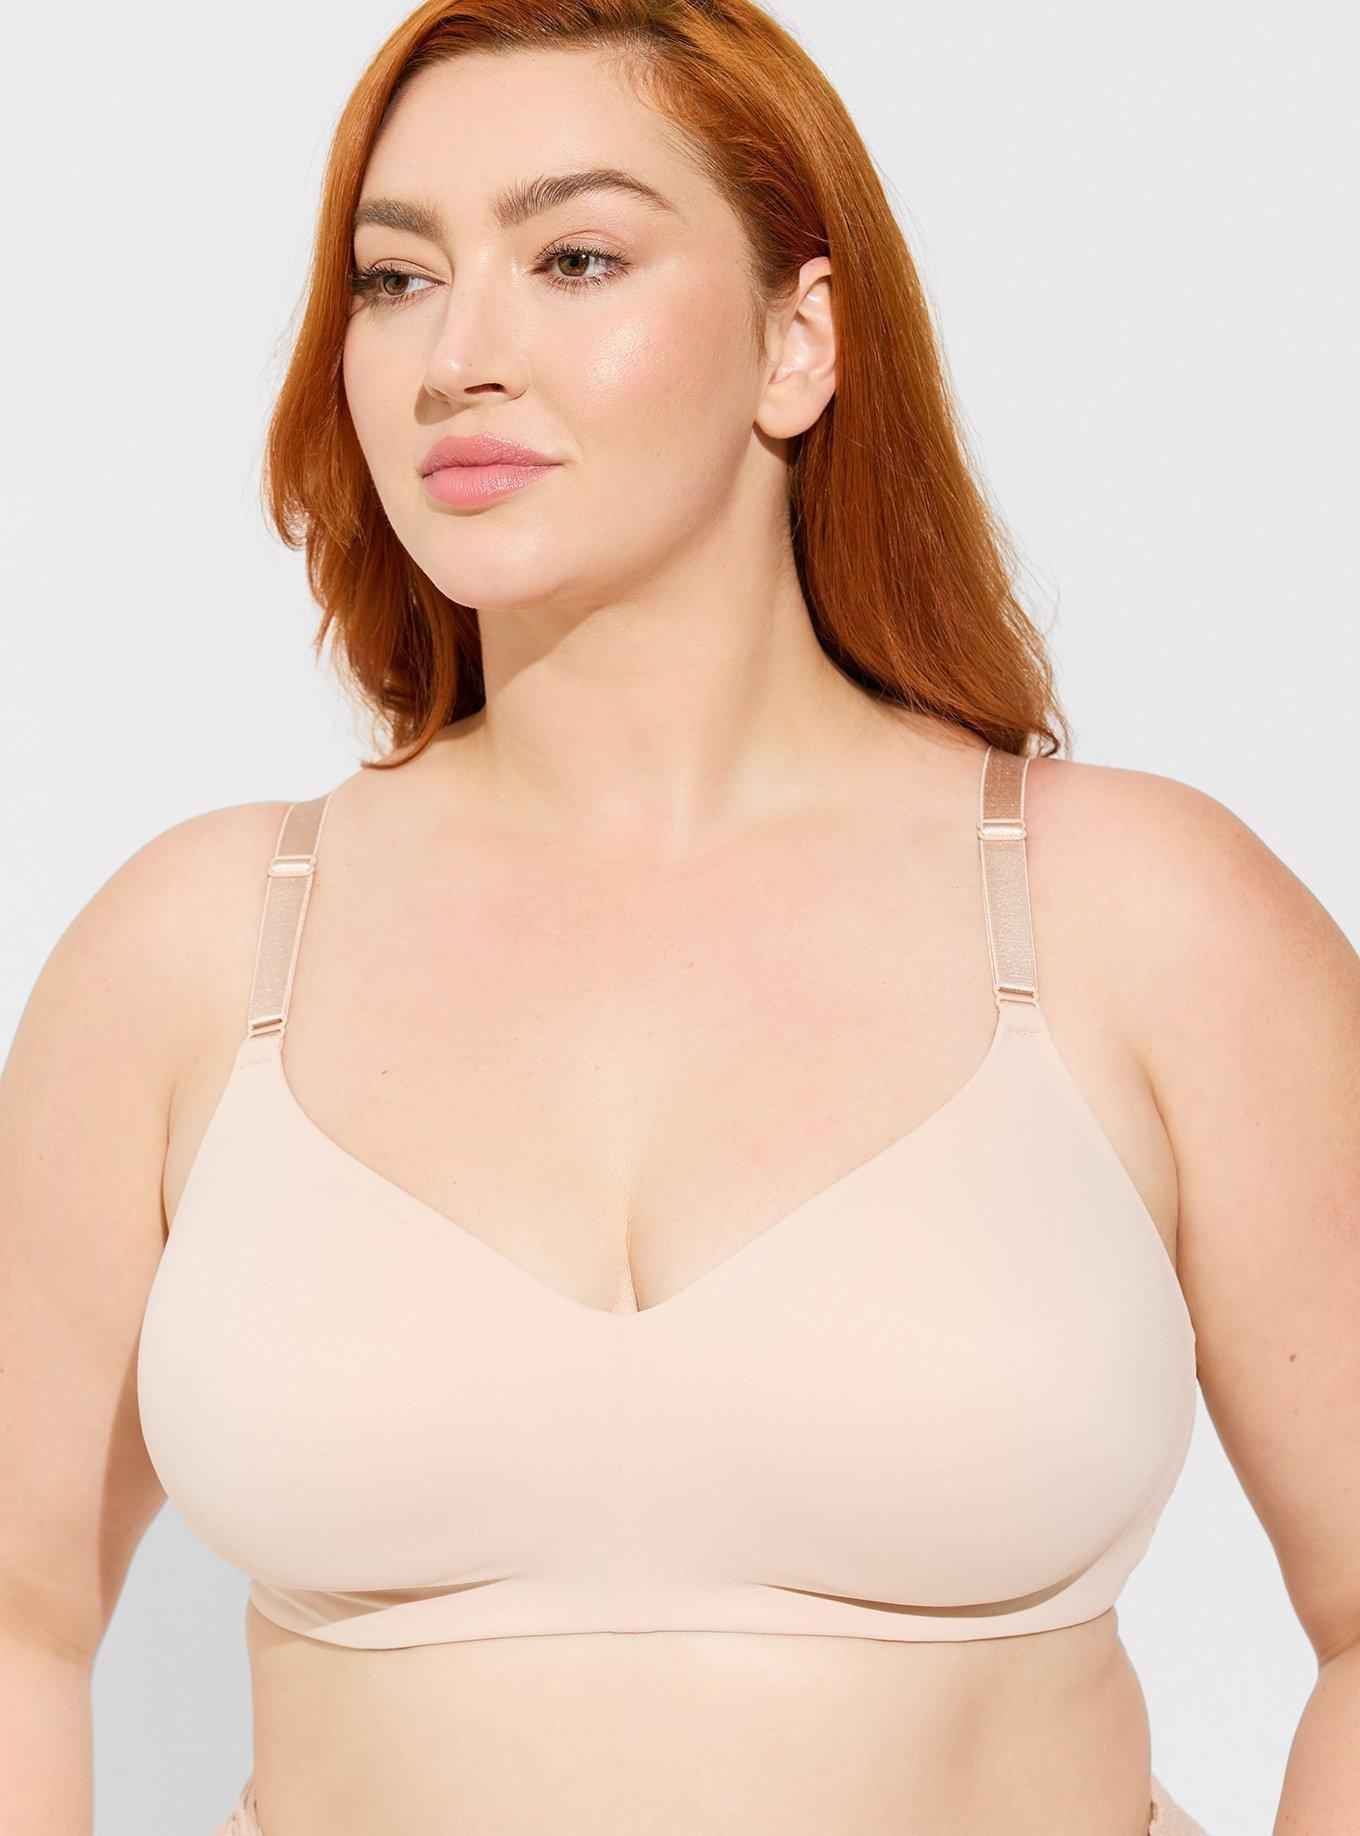 Size 14-16 Plus Size Mastectomy & Nursing Bras